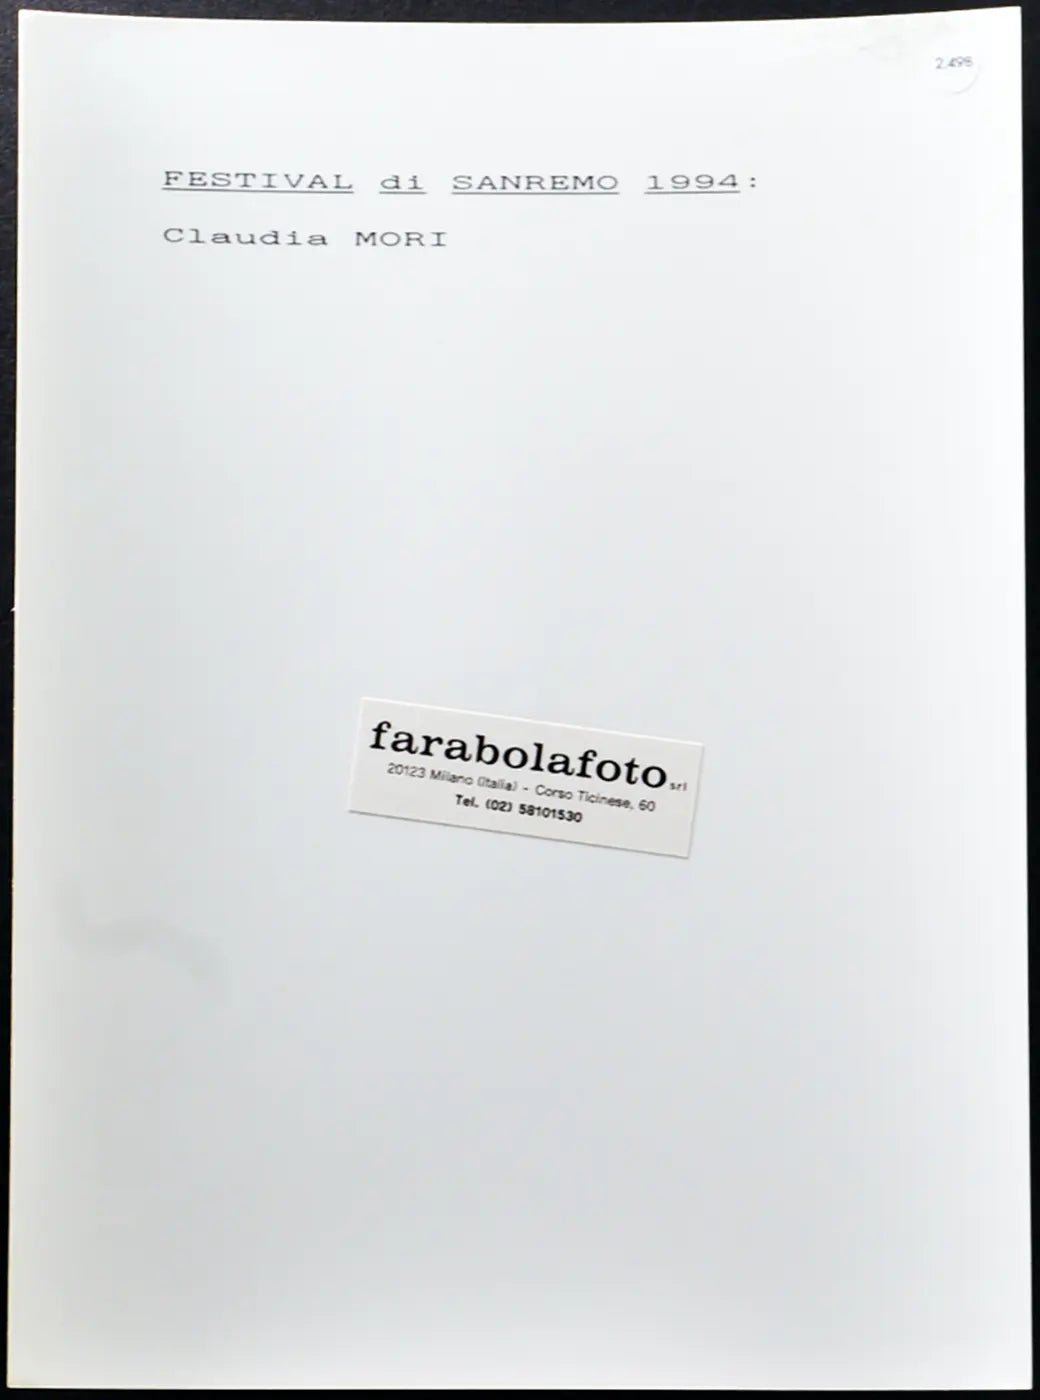 Claudia Mori Festival di Sanremo 1994 Ft 2498 - Stampa 24x18 cm - Farabola Stampa ai sali d'argento